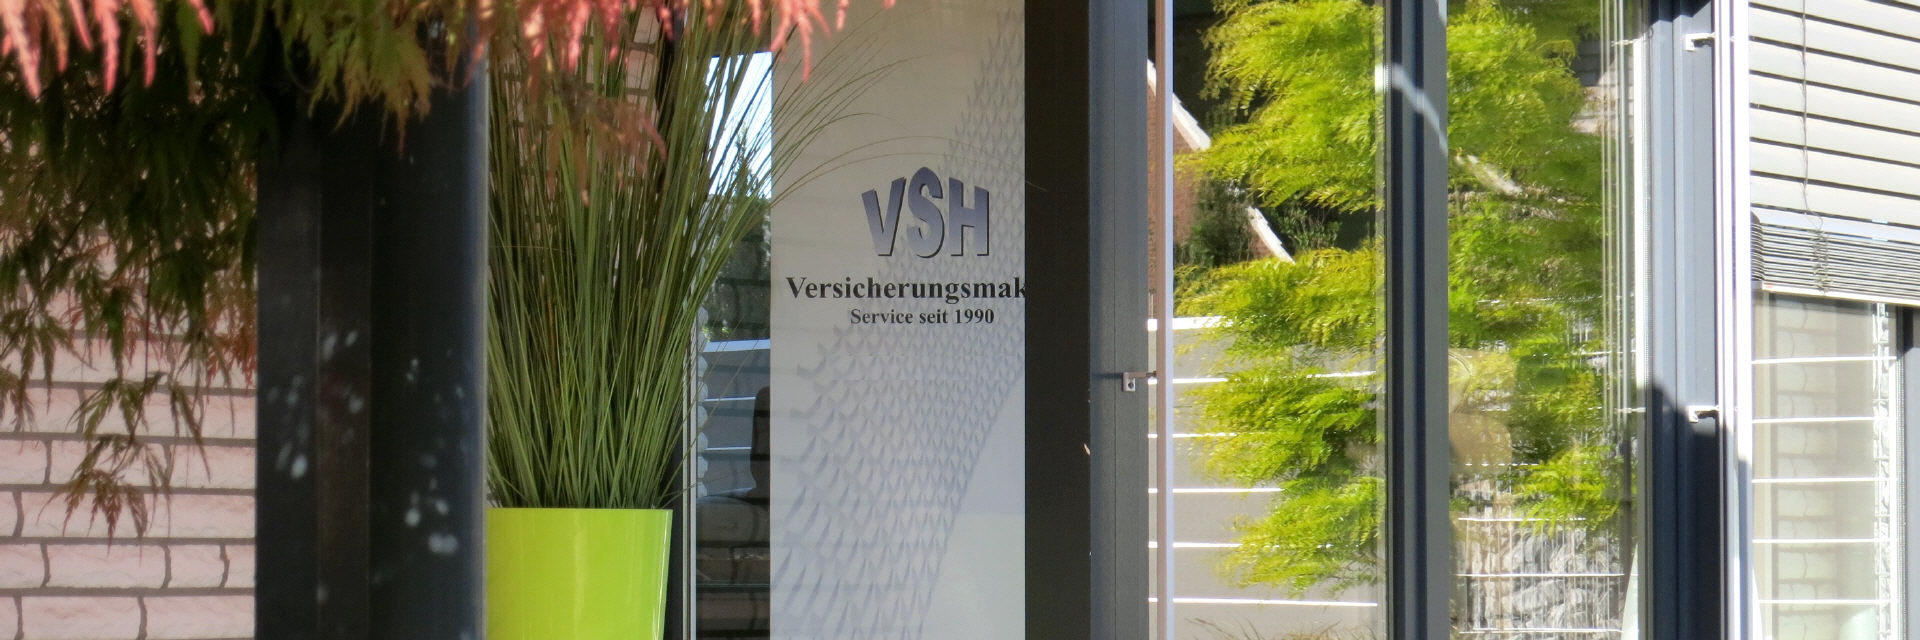 VSH-Suthor Versicherungsmakler in Mönchengladbach